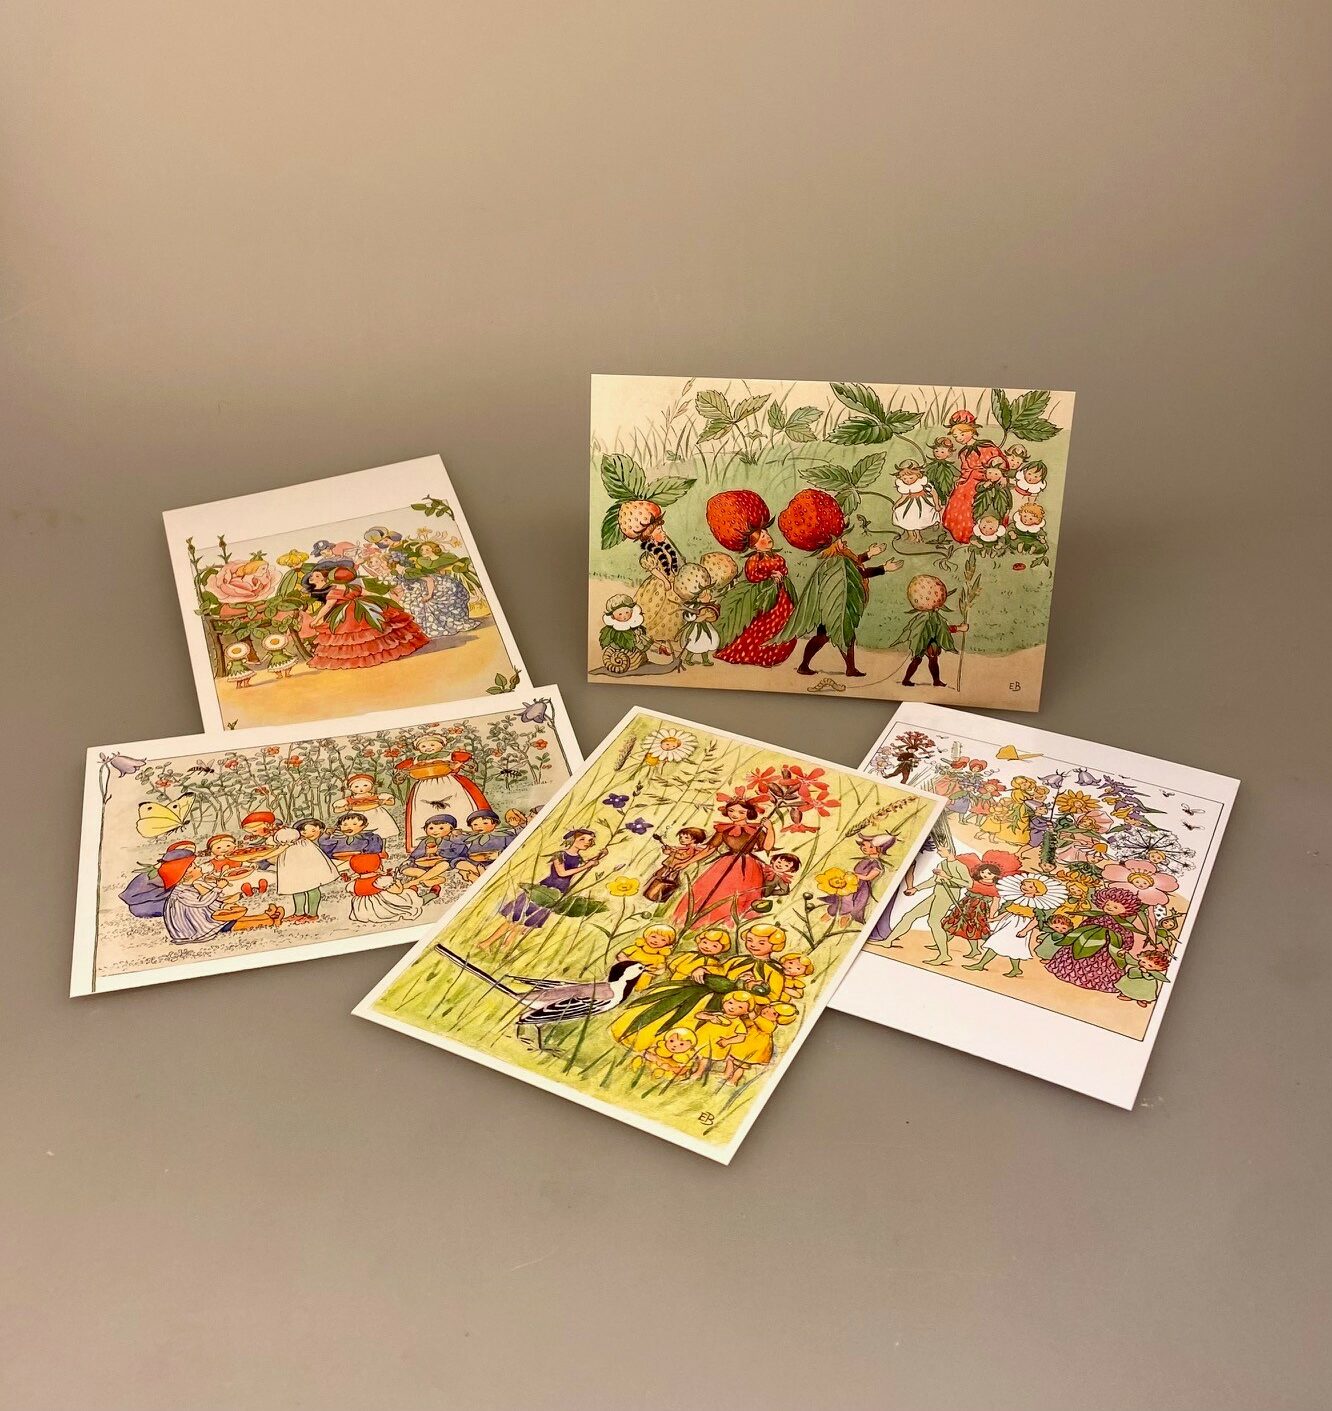 Postkort pakke - Elsa Beskow Blomsterbørn, blomsterbarn, blomsterfesten, jordbærfamilien, jordgubbfamilien, putte i blåbærskoven, elsa beskow, elsa, besekov, svensk, sverige, eventyr, nostalgisk, biti, ribe